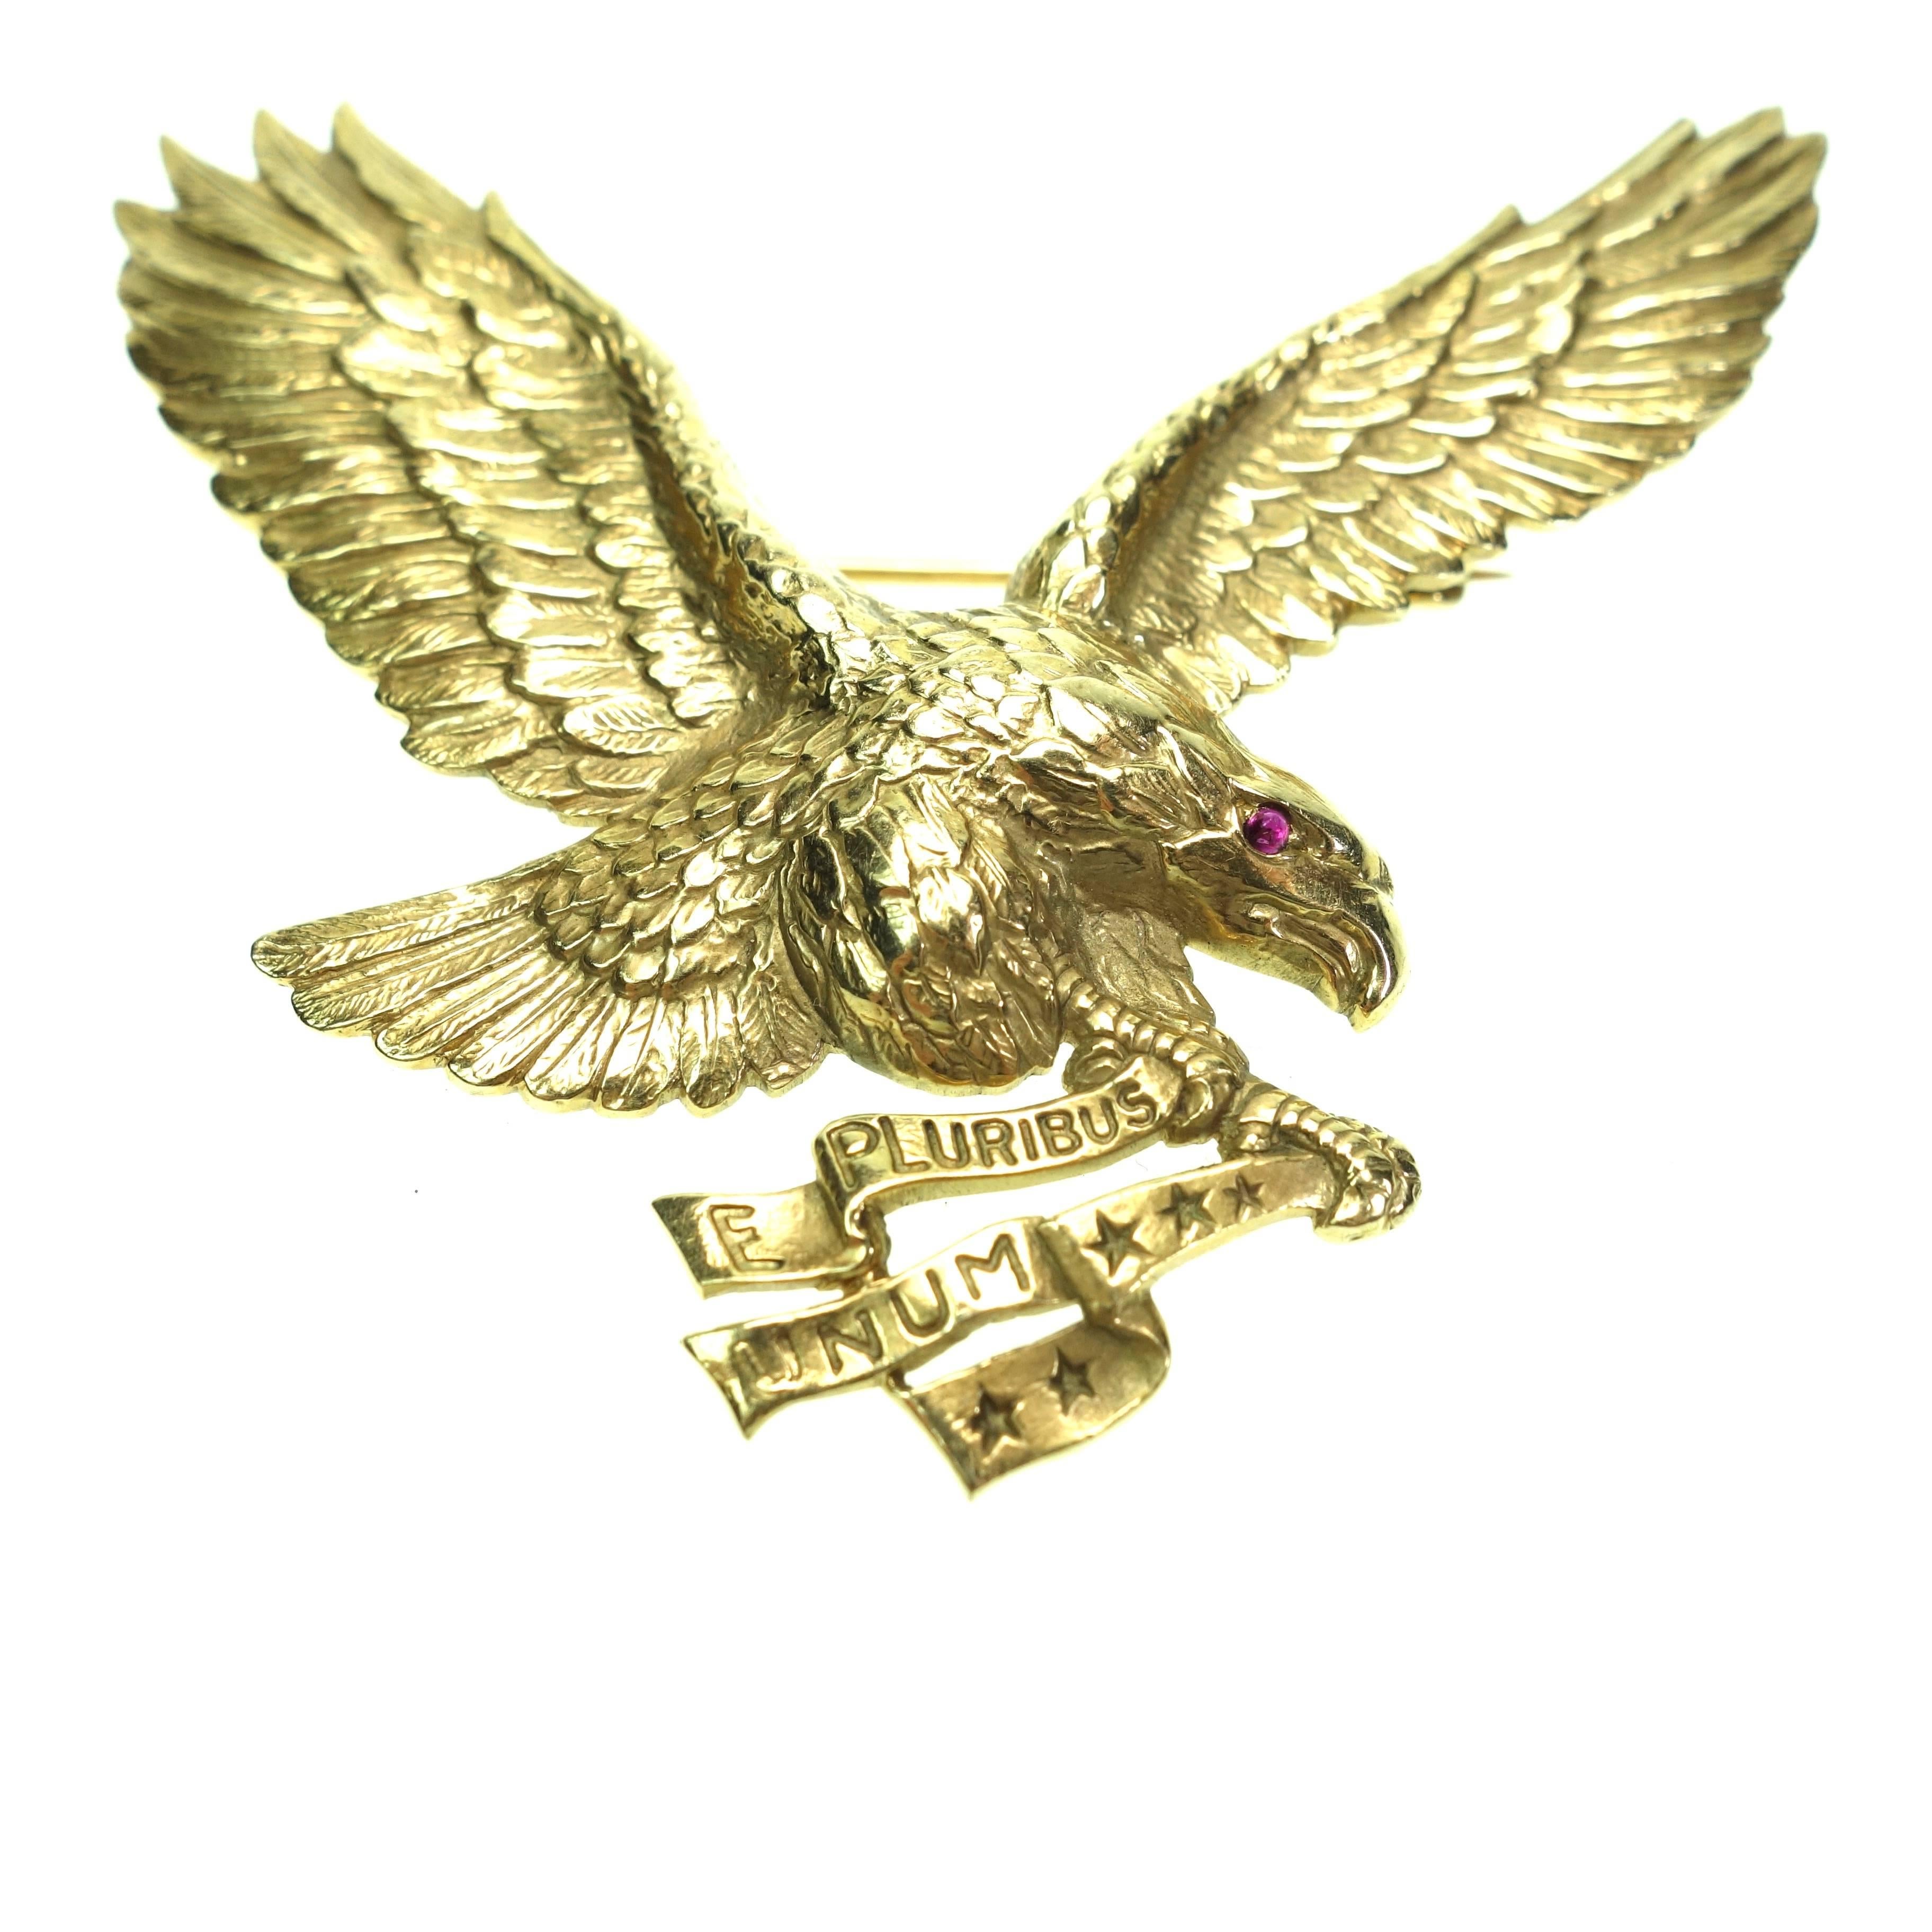 Rare Tiffany & Co. 14K yellow gold american eagle with a ribbon E pluribus Unum (